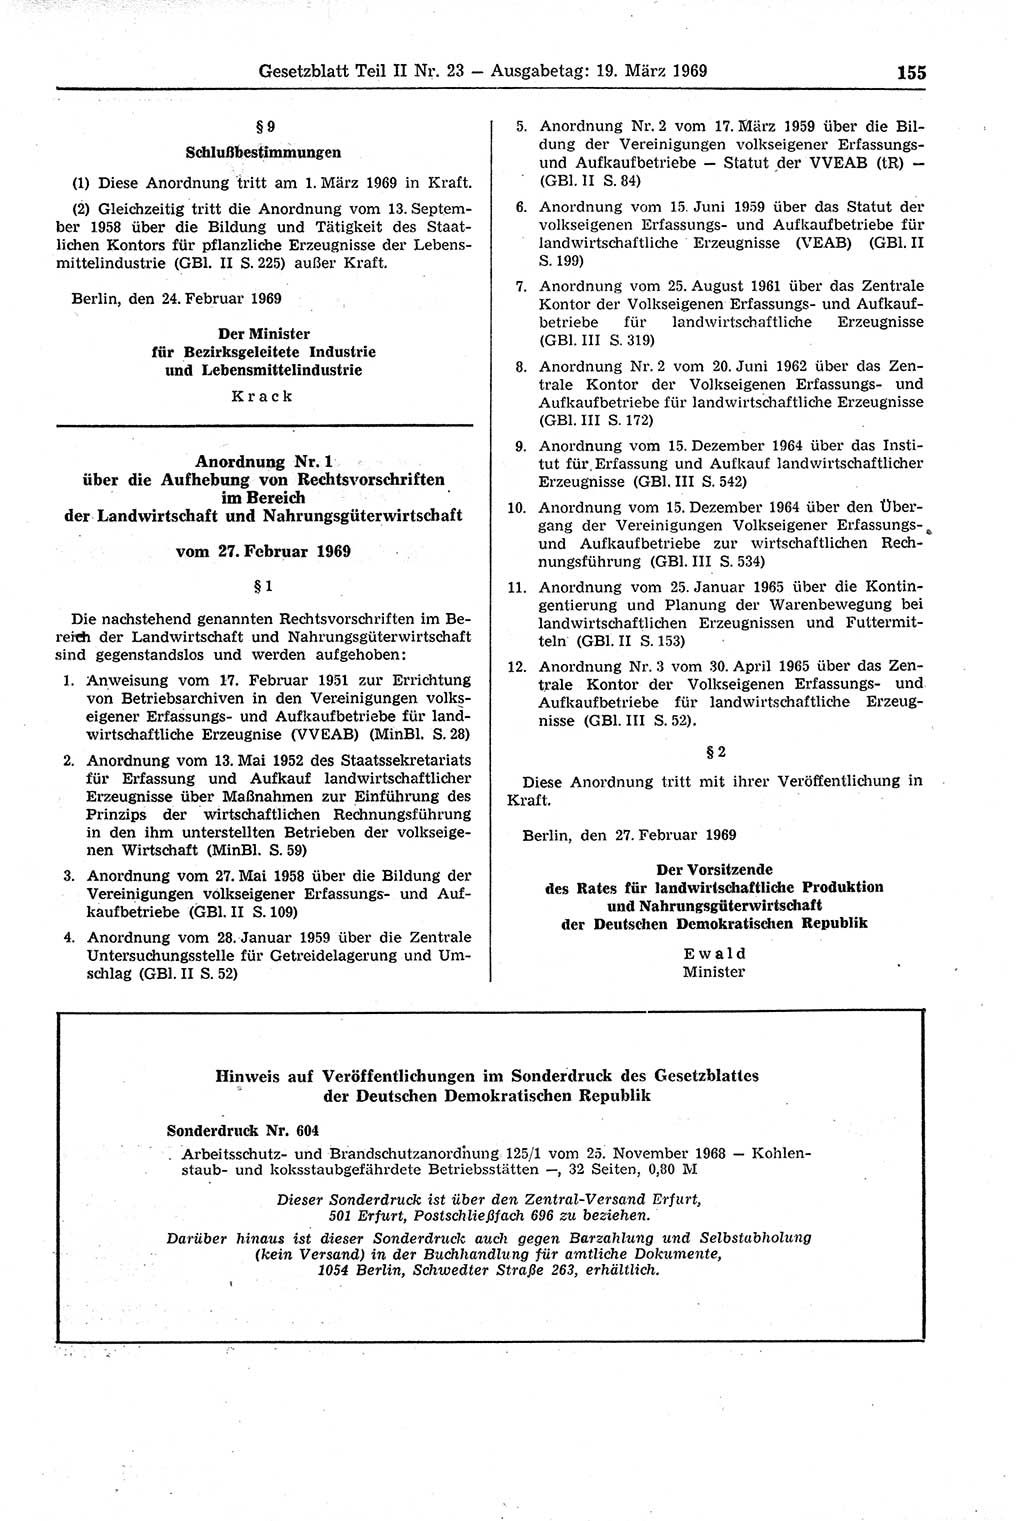 Gesetzblatt (GBl.) der Deutschen Demokratischen Republik (DDR) Teil ⅠⅠ 1969, Seite 155 (GBl. DDR ⅠⅠ 1969, S. 155)